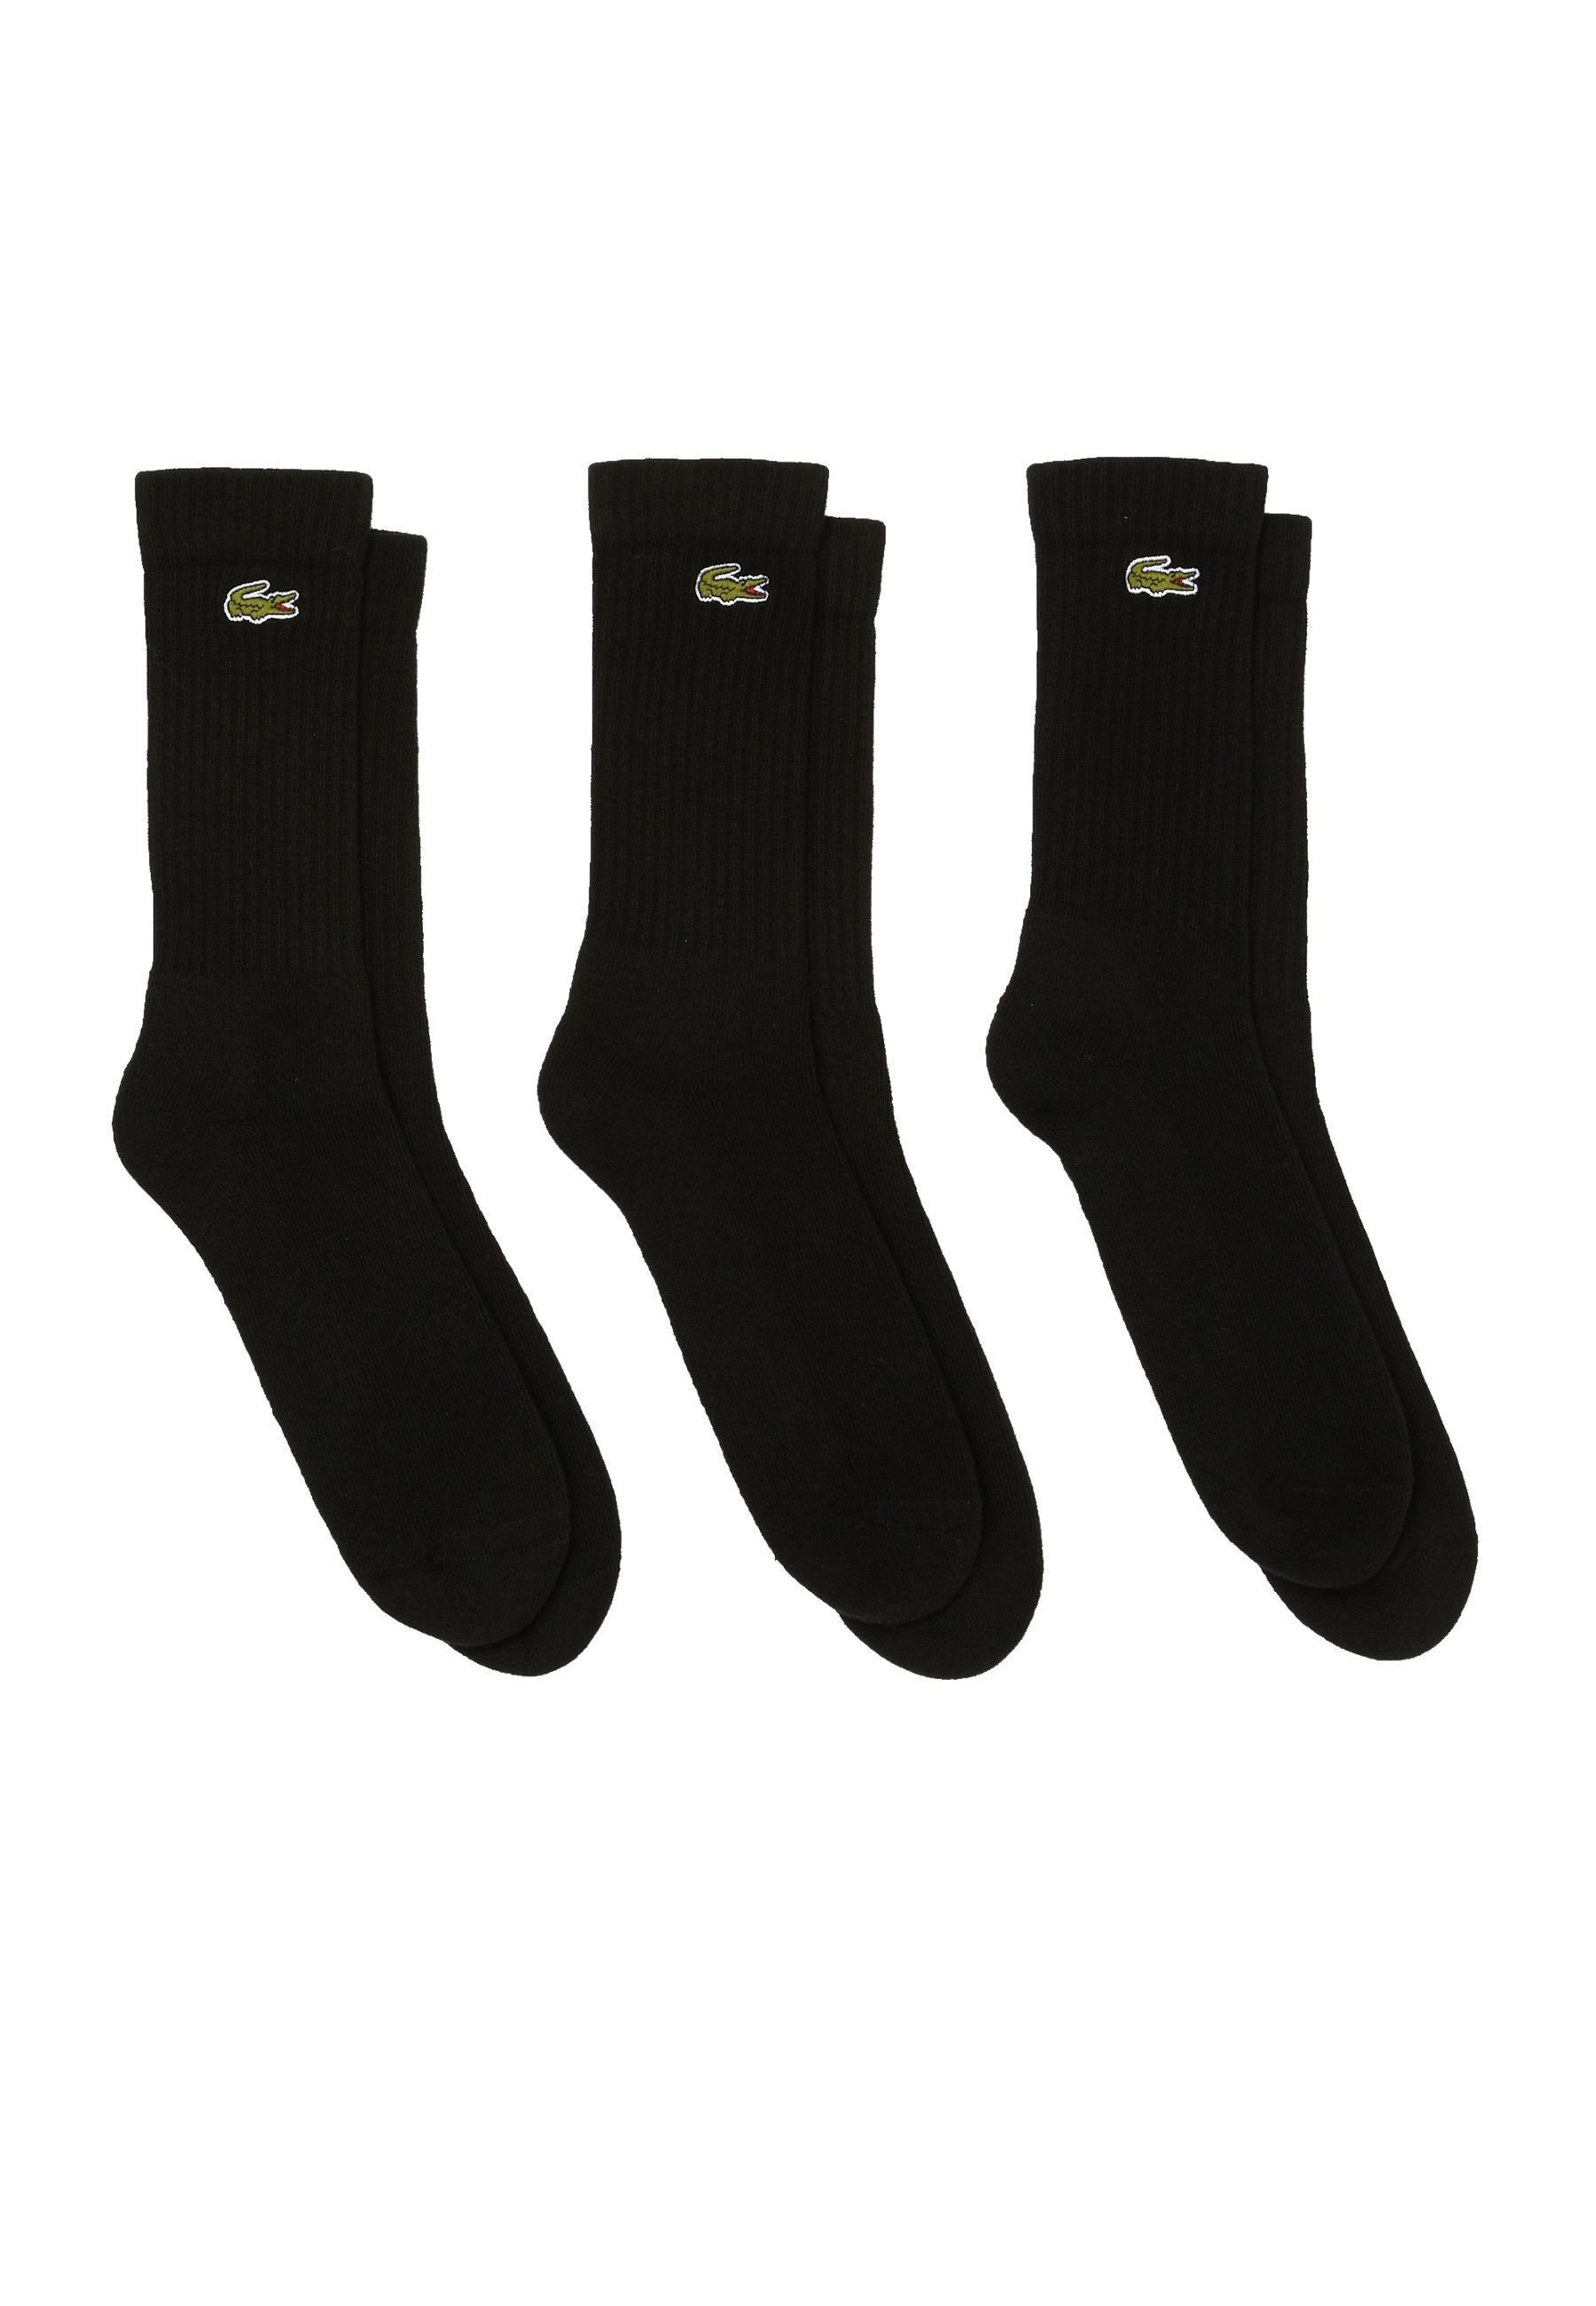 Lacoste Socken Socken hohe schwarz (3-Paar) Offer Permanent Socken Dreierpack